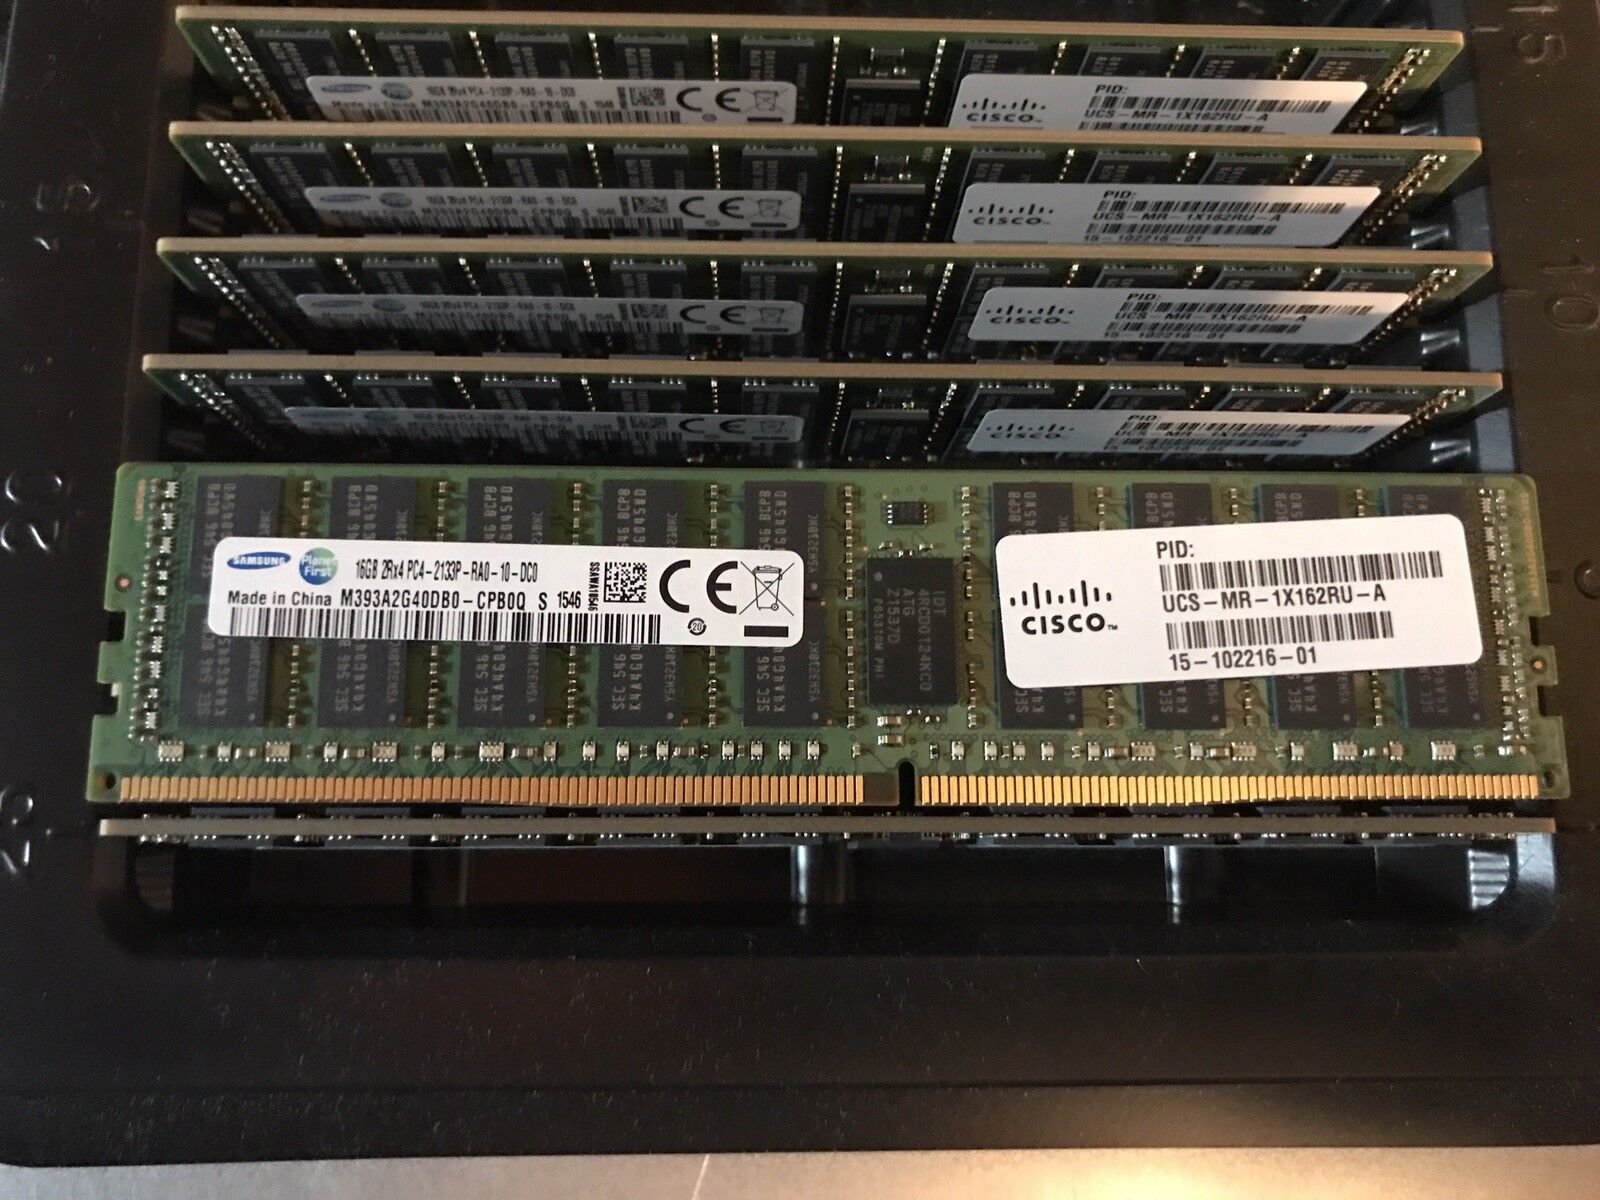 UCS-MR-1X162RU-A= Cisco DDR4 - 16 GB 